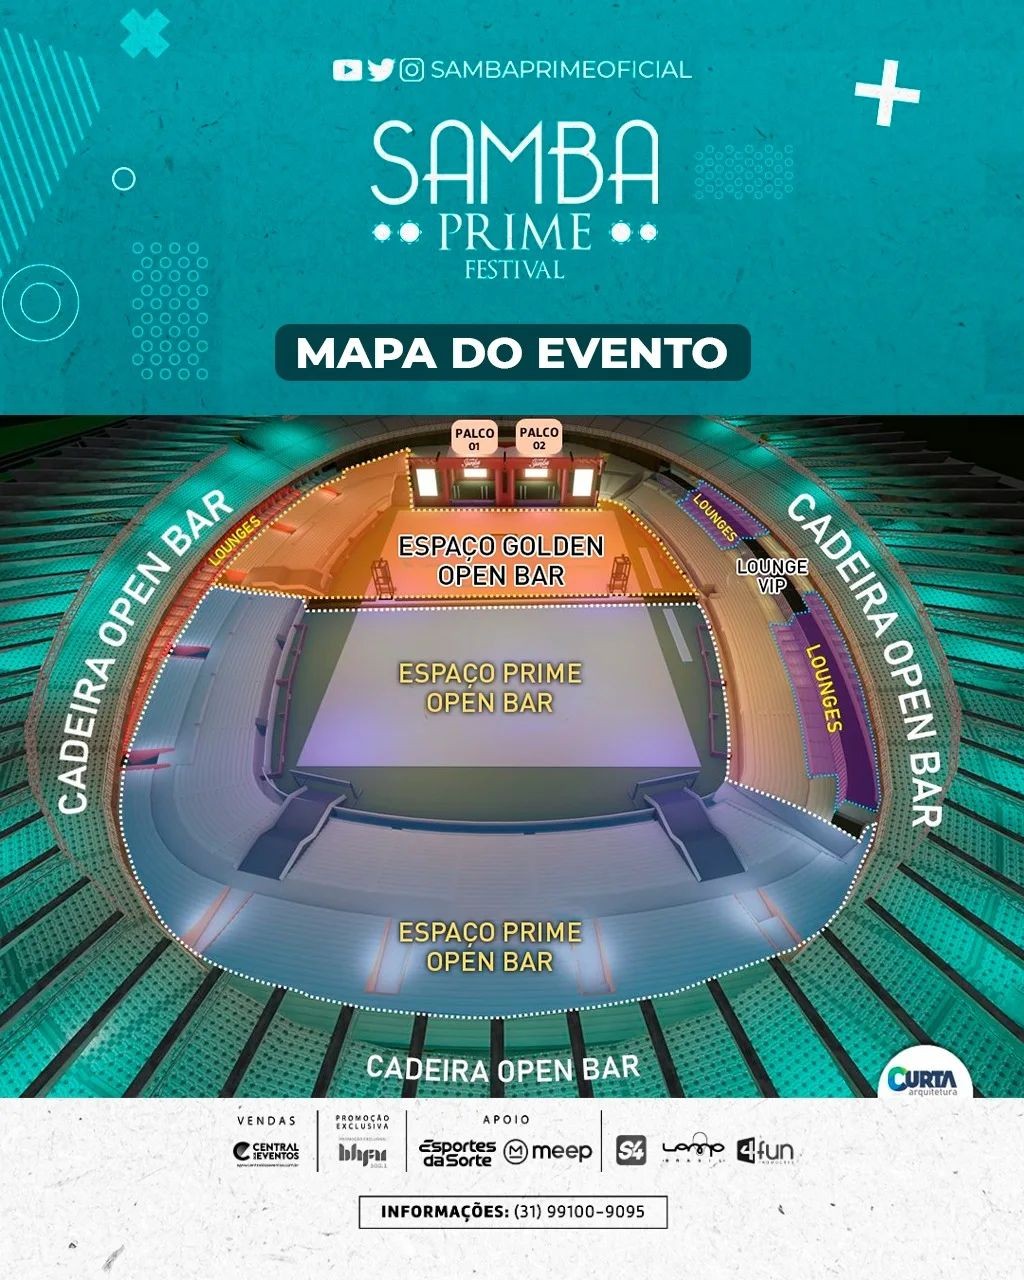 Central dos Eventos - Reveillon Vai ter Samba